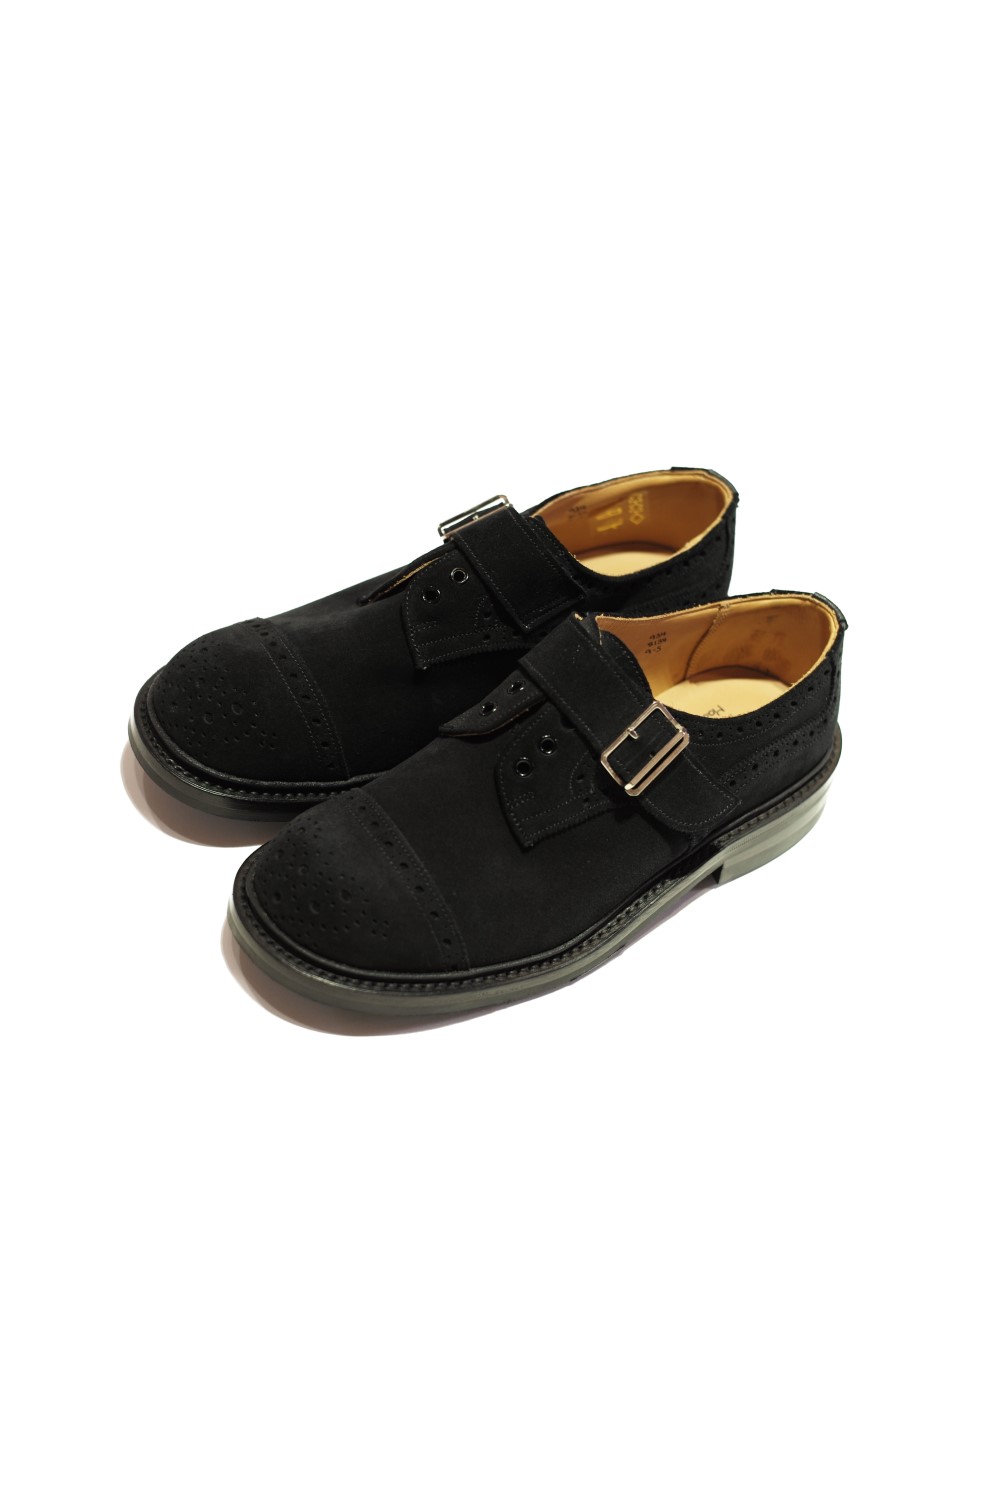 monk shoes black